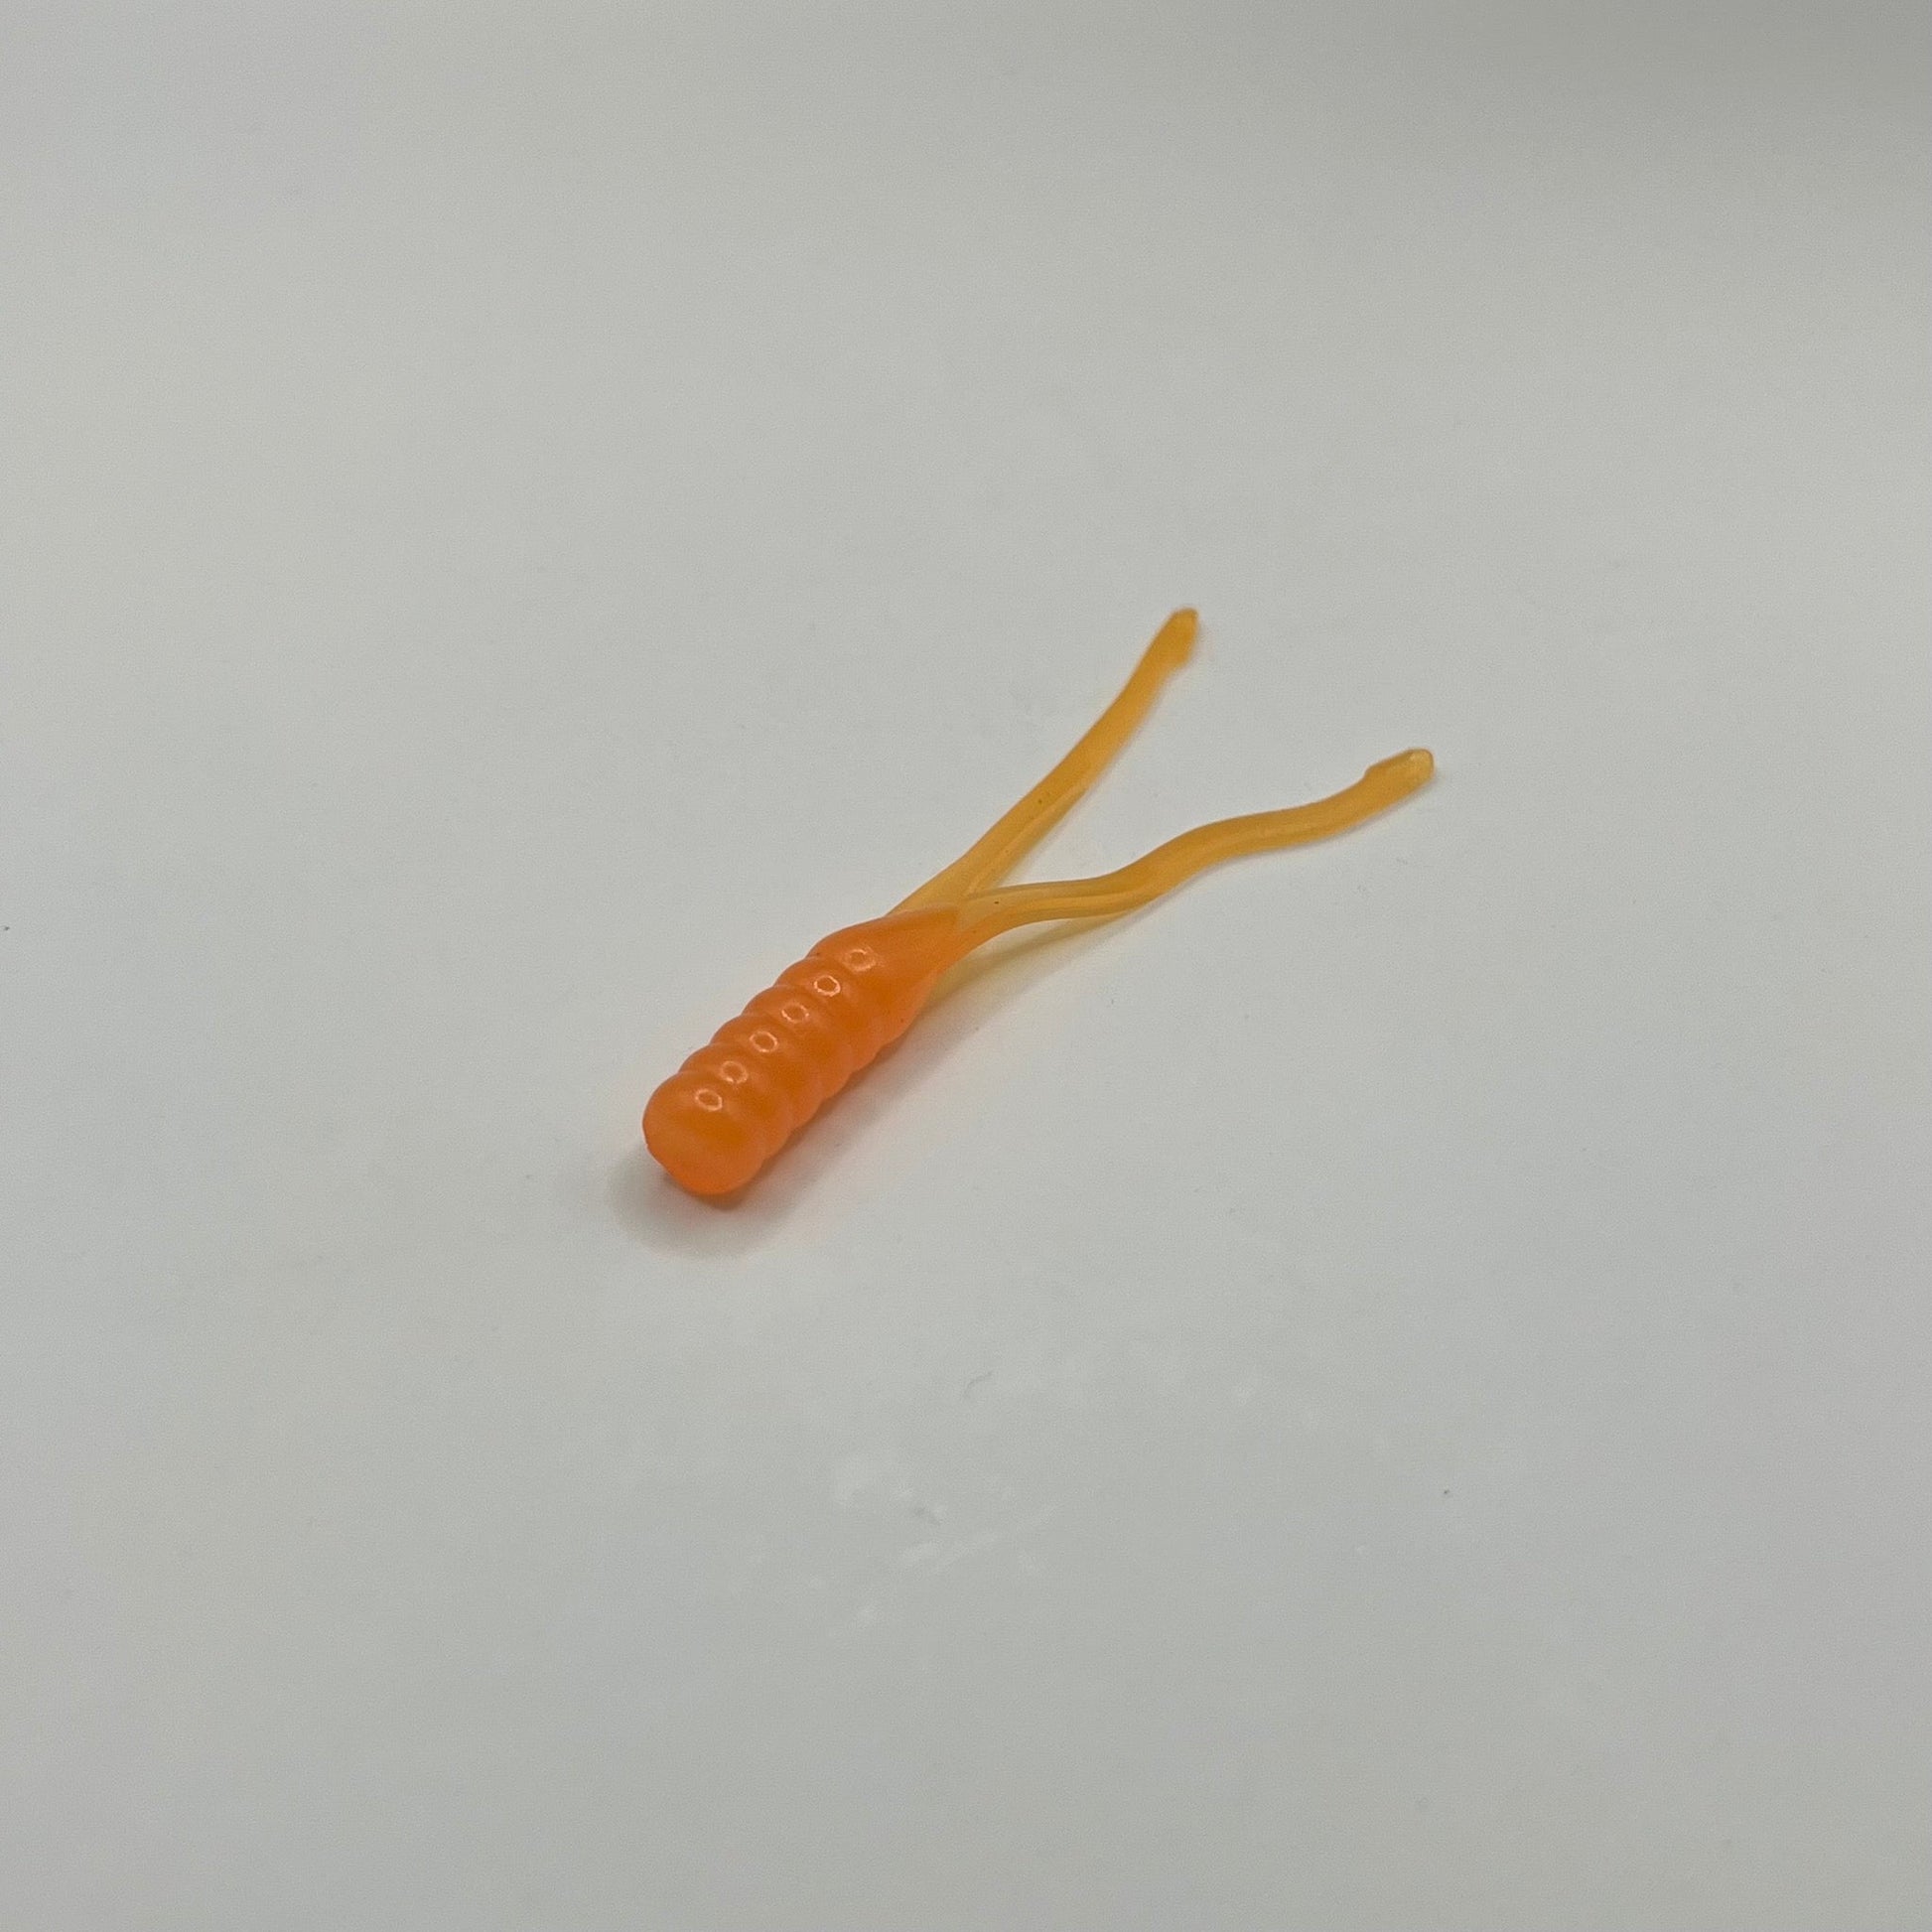 Orange Crappie Beetle Bug 2.25" - Premium Soft Plastic Lure from JAC’D Bait Co - Shop now!